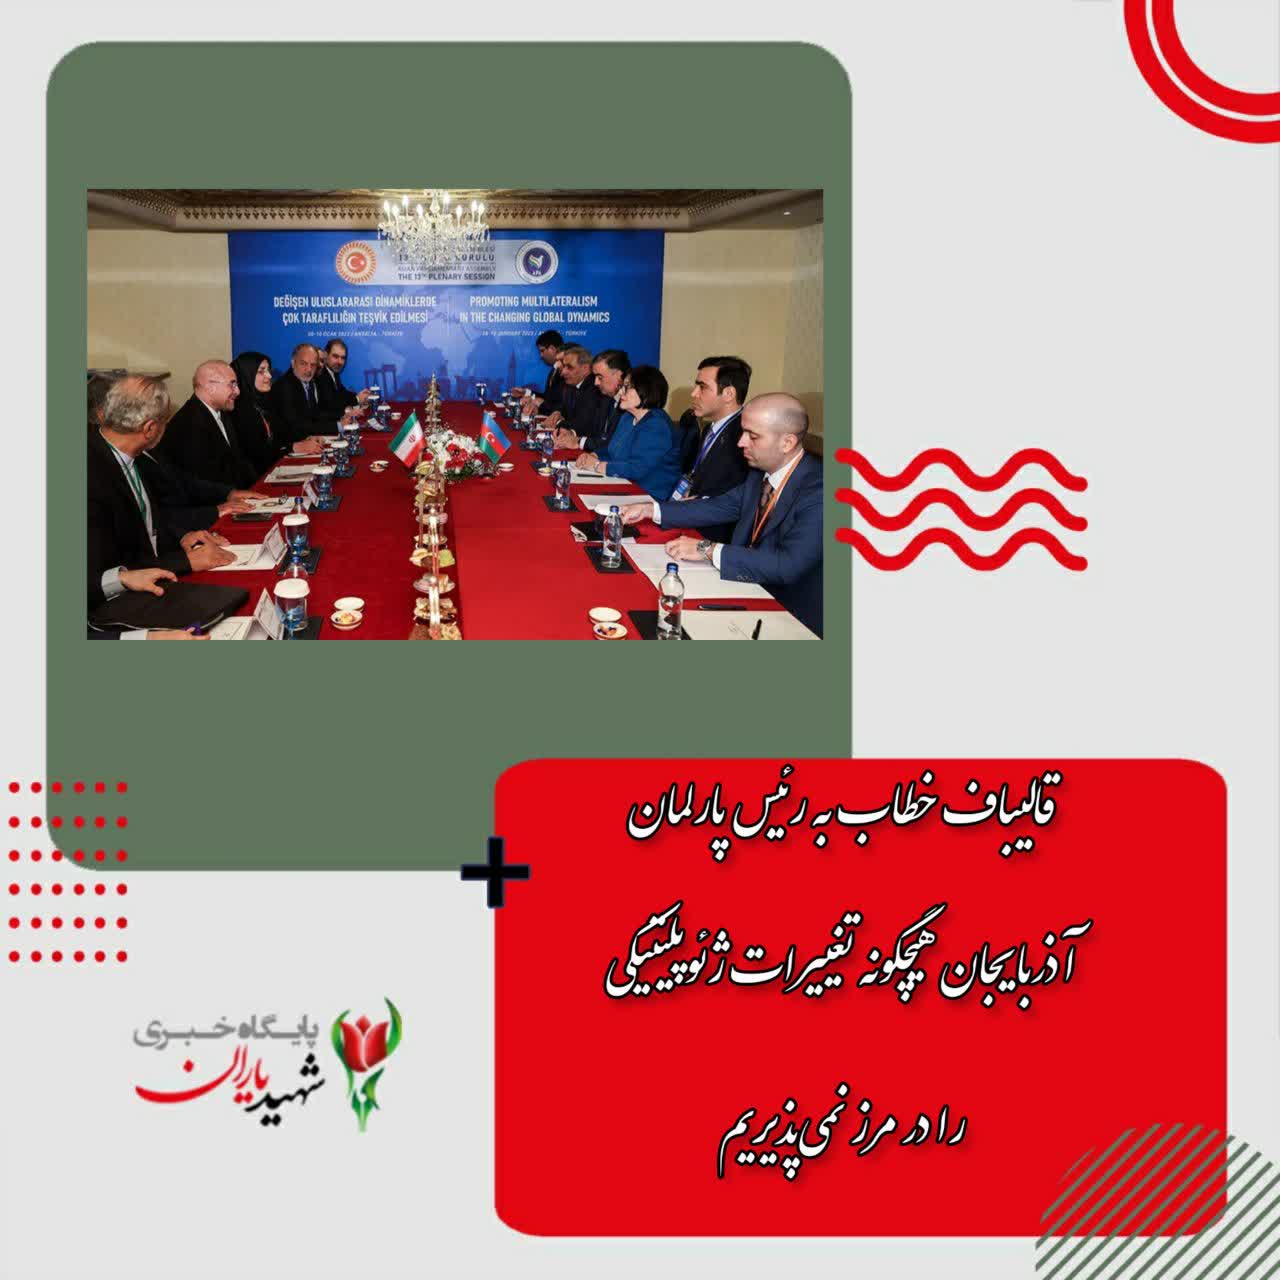 رئیس مجلس شورای اسلامی در دیدار مشترک با رئیس پارلمان جمهوری آذربایجان گفت: